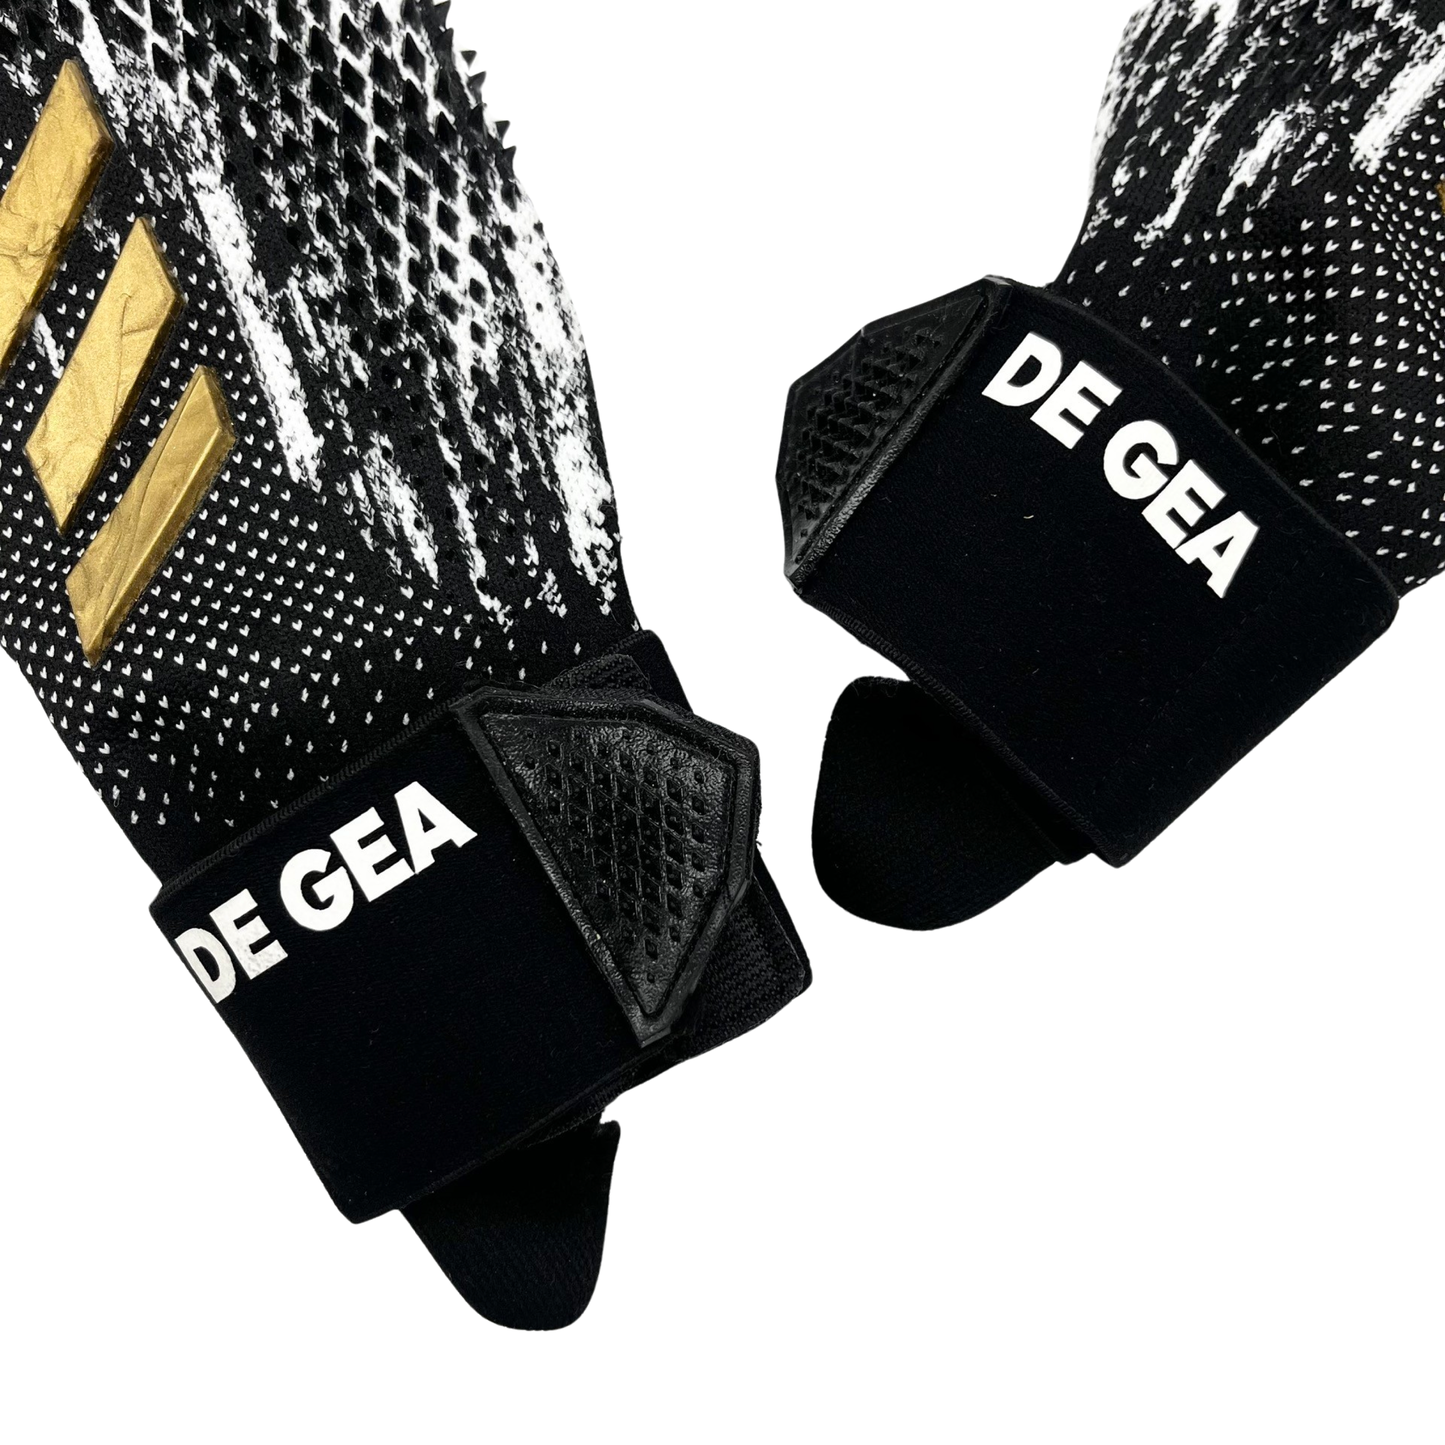 David De Gea Match Worn Adidas Predator SMU Pro Goalkeeper Gloves